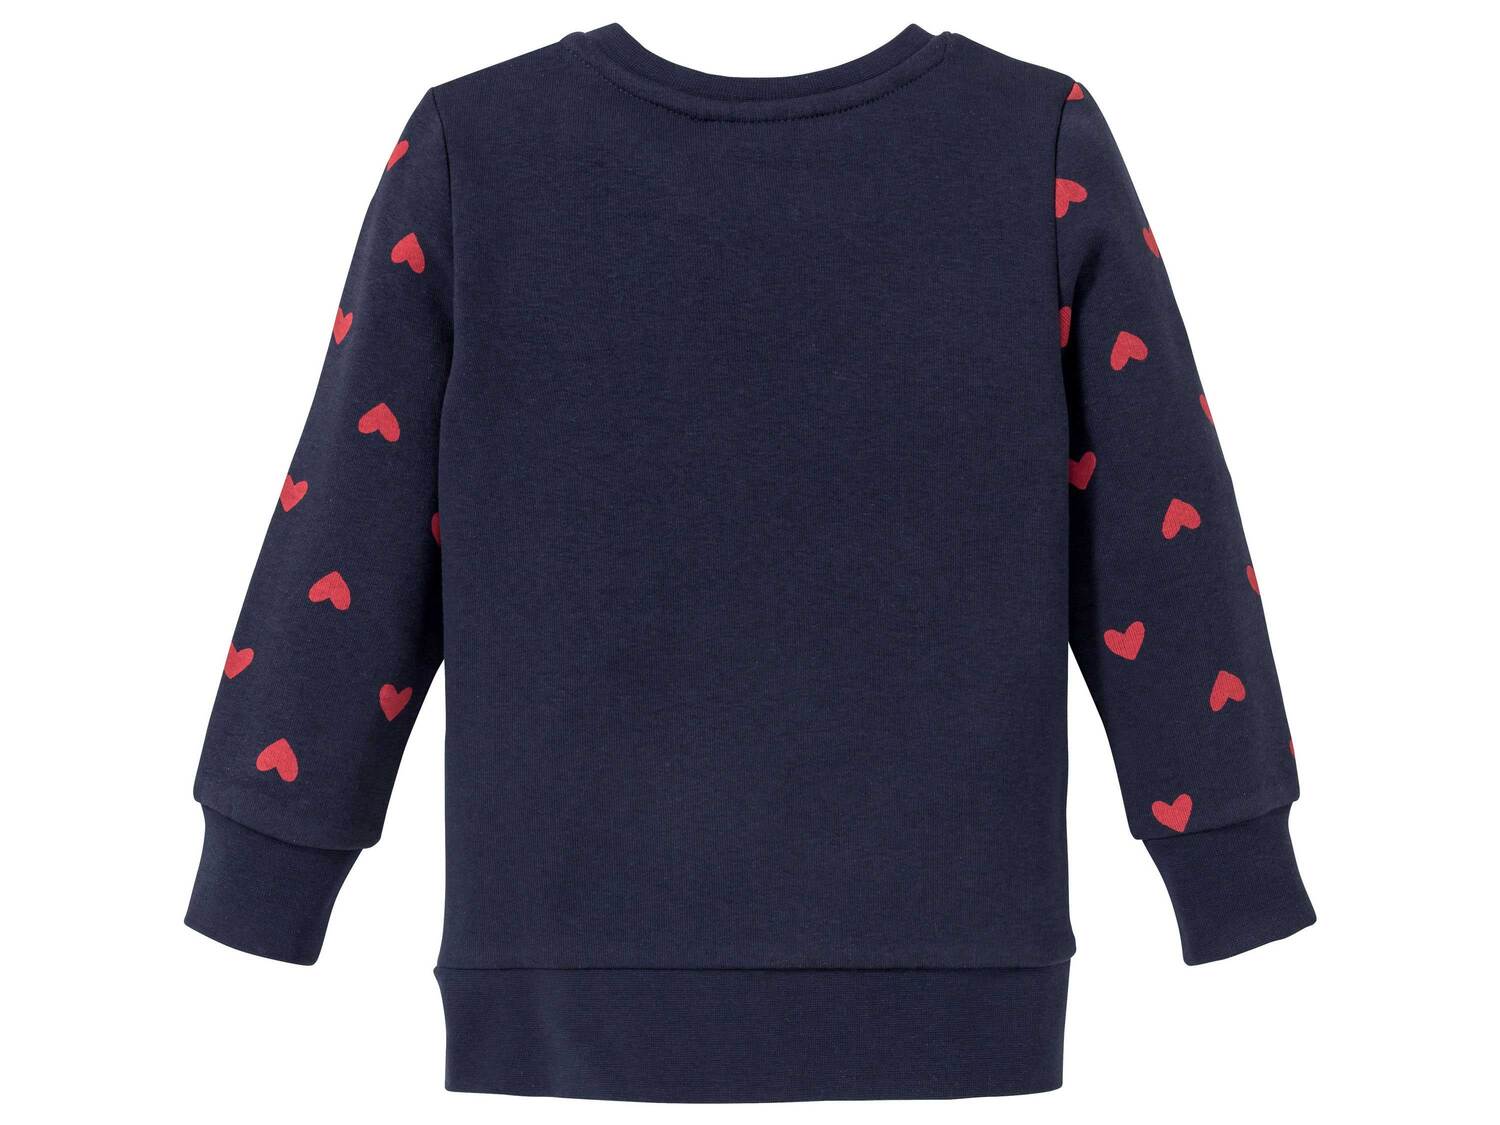 Bluza dresowa Lupilu, cena 19,99 PLN 
- rozmiary: 86-116
- wysoka zawartość bawełny
- ...